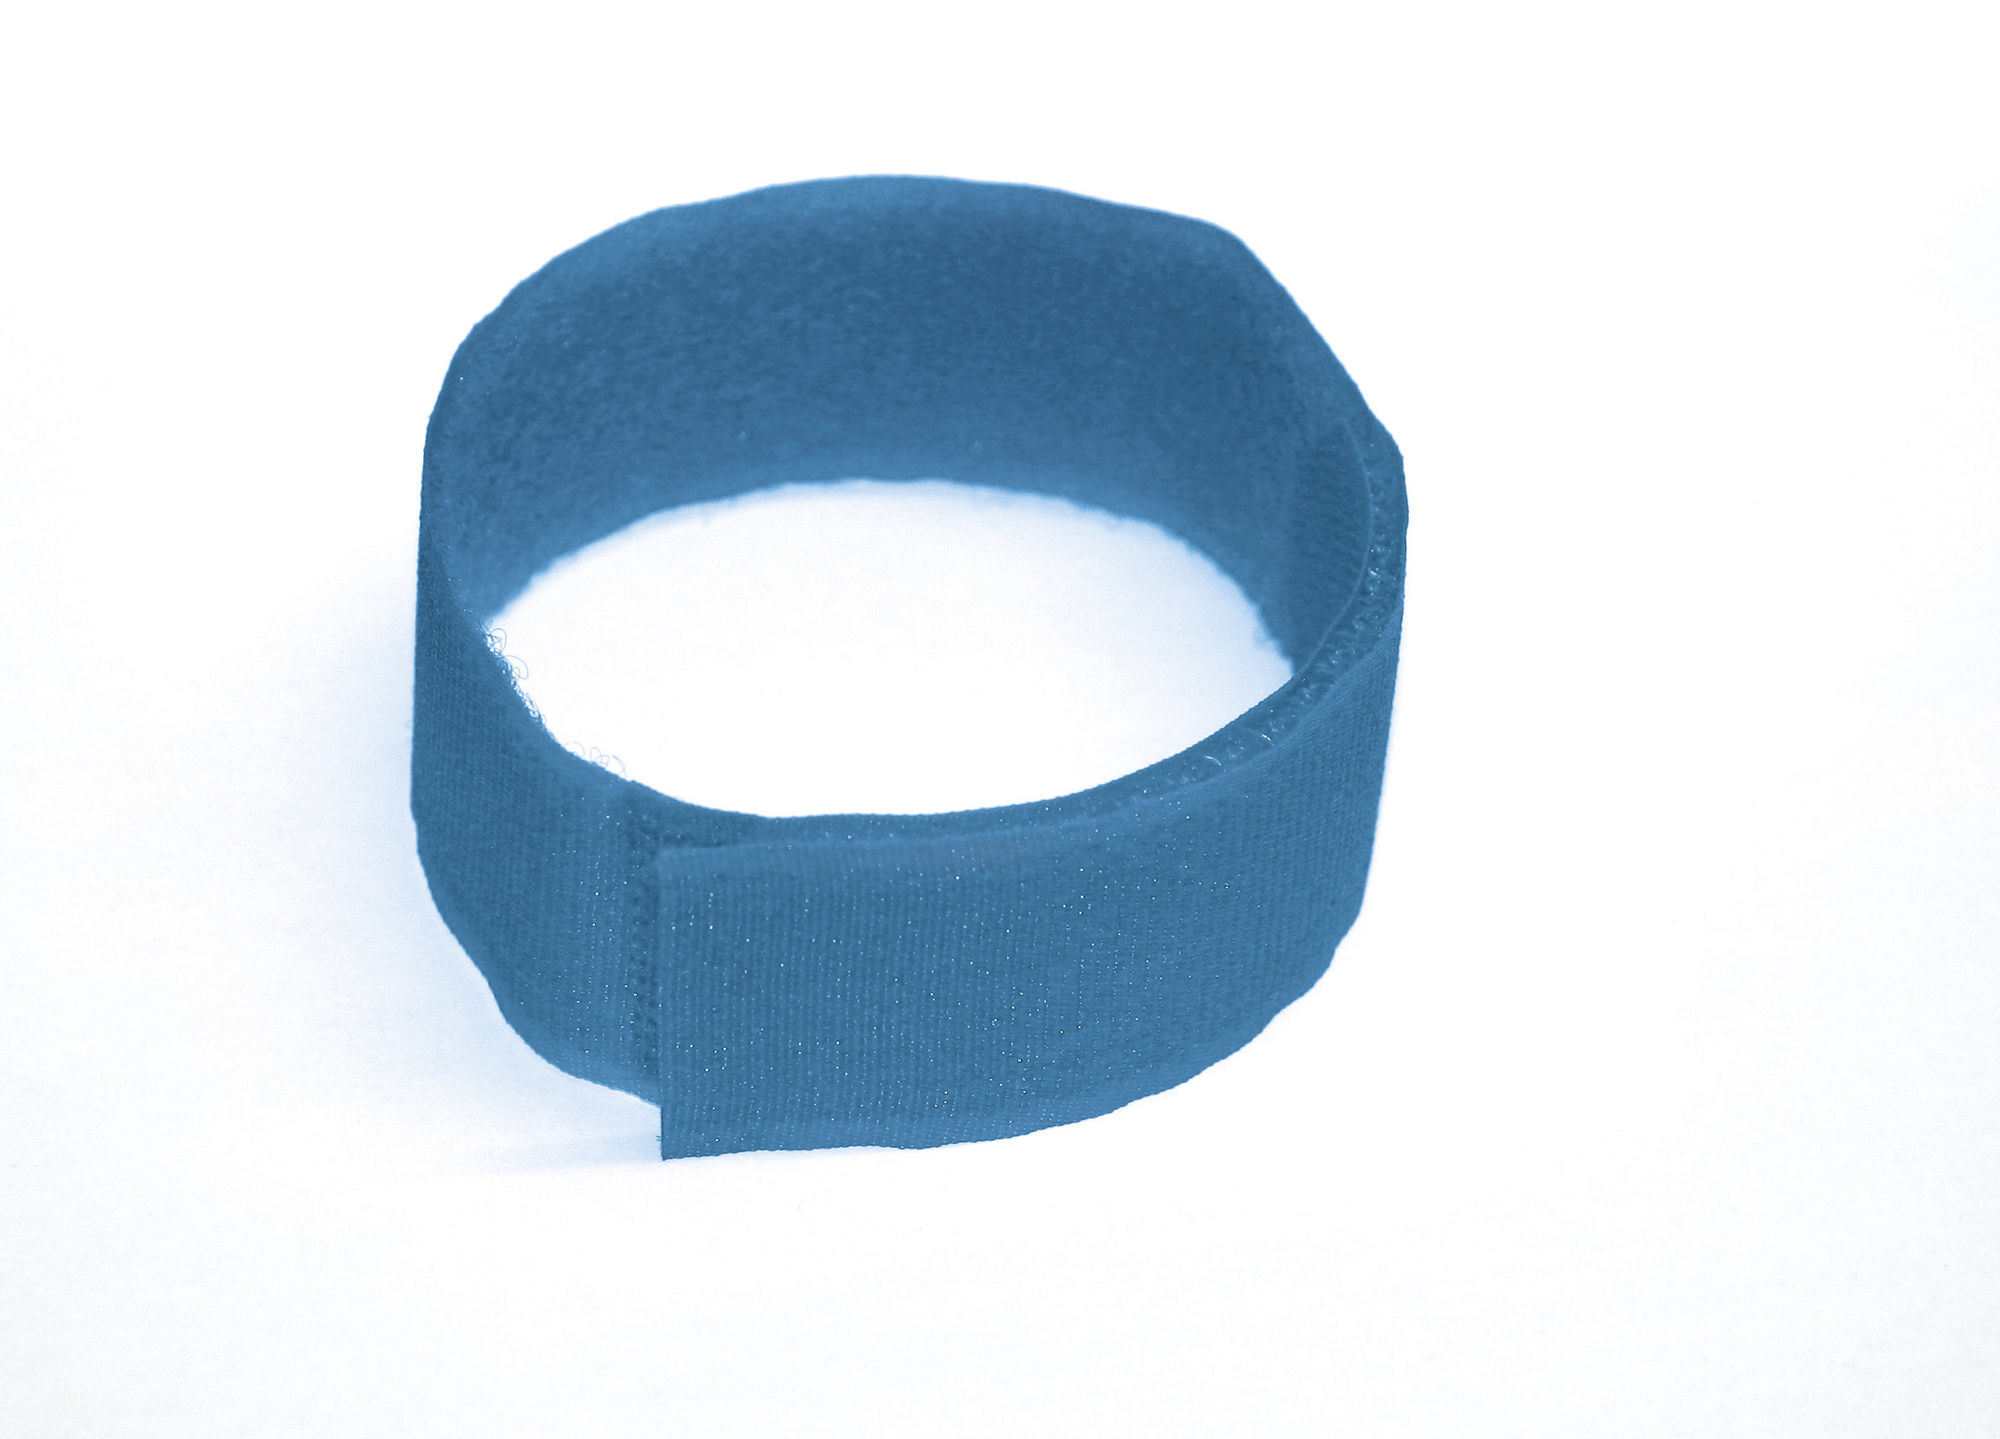 Fesselmarkierungsband -blau-, 36 cm, Klettverschluss (10 St.)